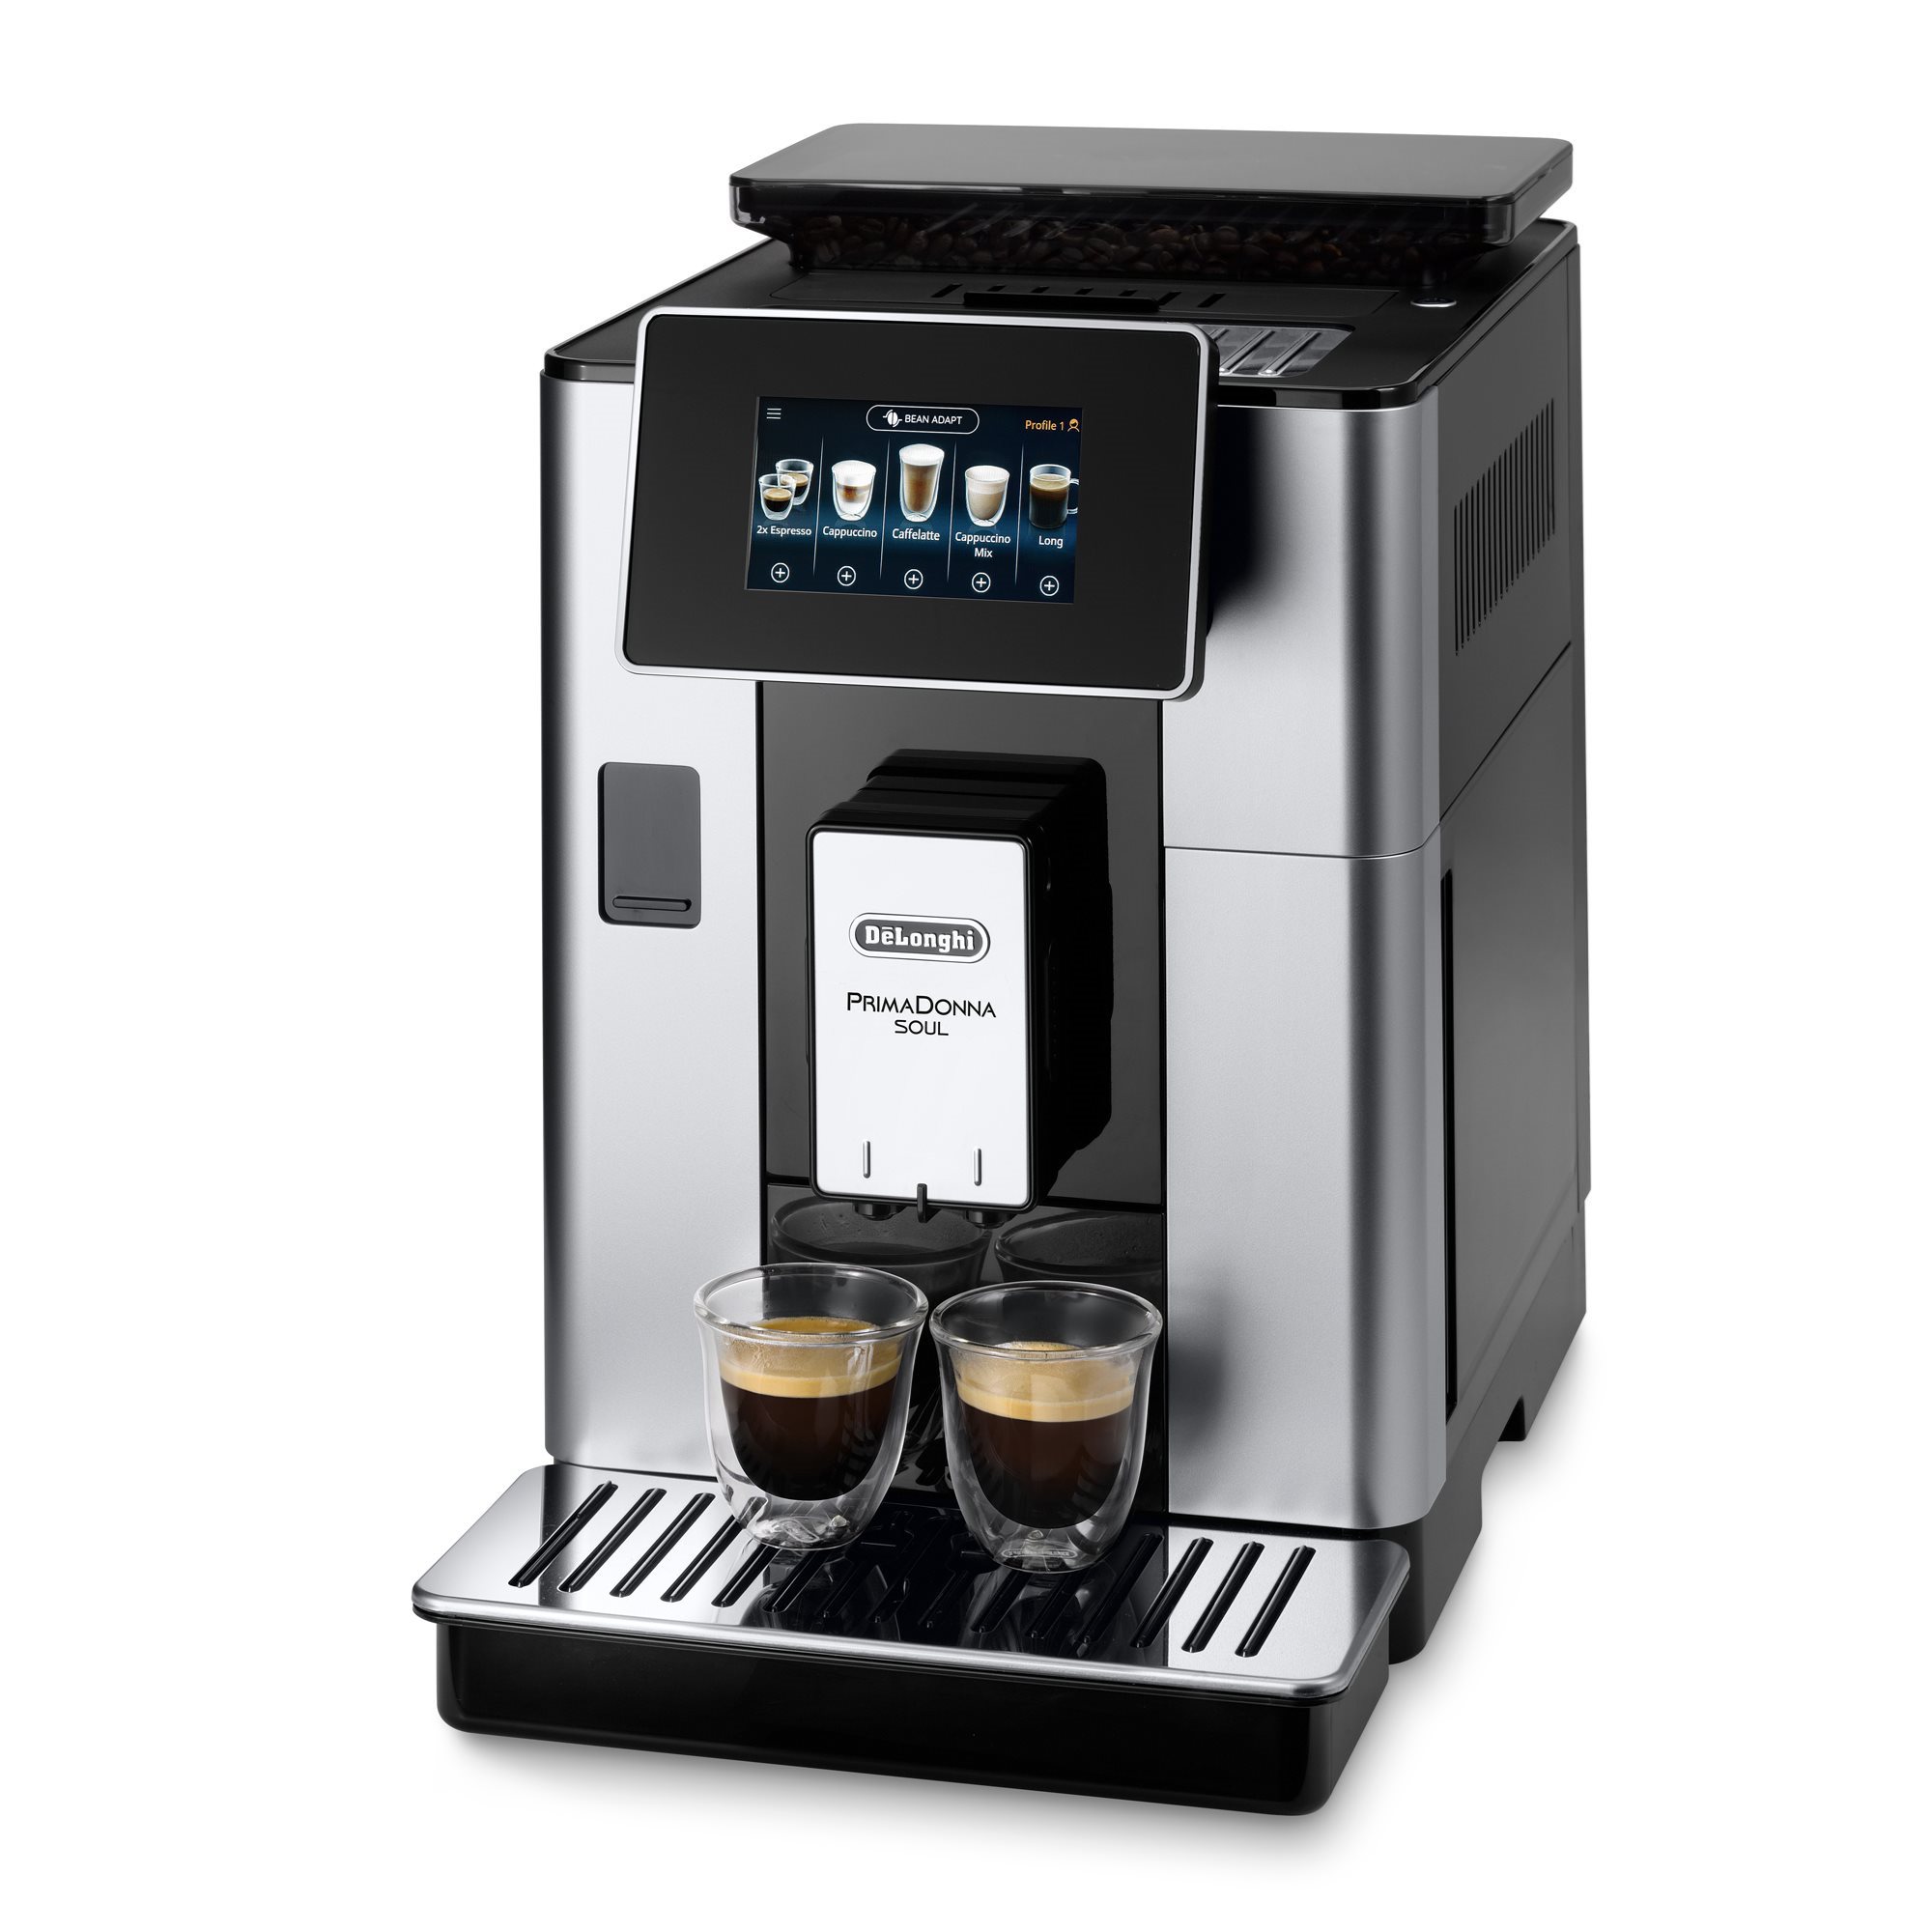 Automatic espresso machine, 1450W, PrimaDonna Soul, silver